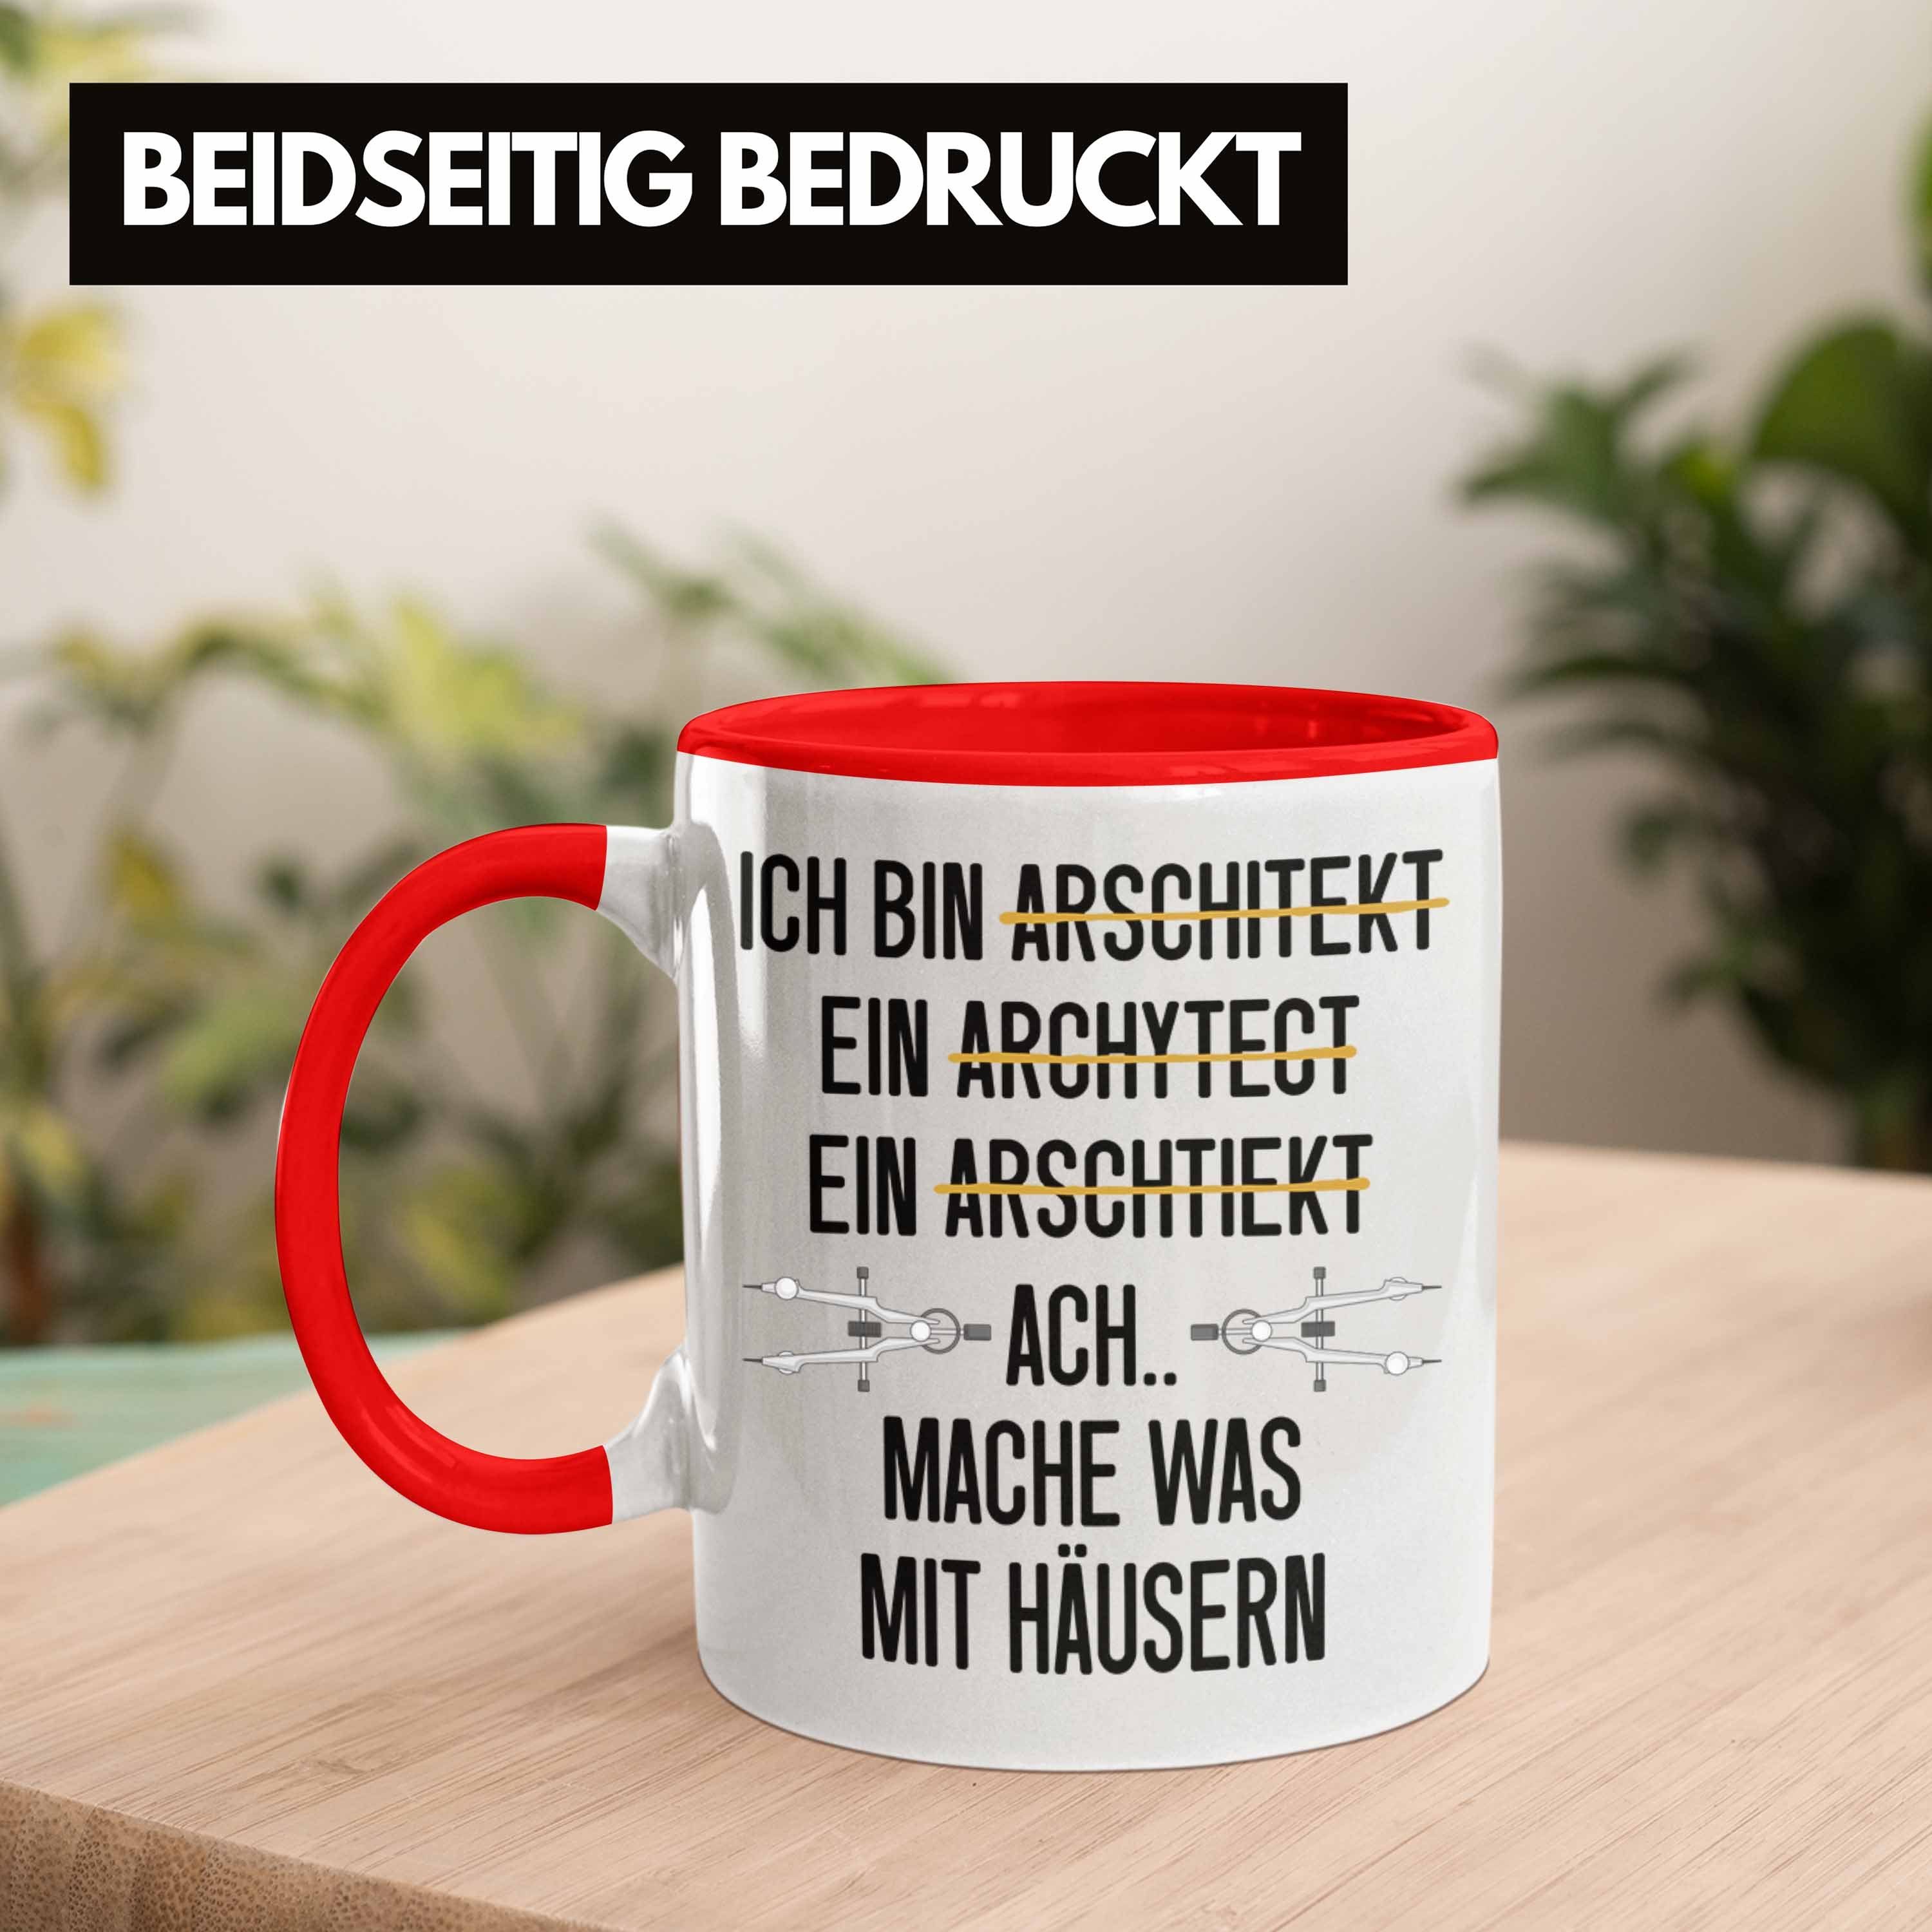 Trendation Tasse Trendation - Architekt Geschenkidee Geschenk Architekten Spruch Tasse Rot mit Lustig Kaffeetasse Architektur